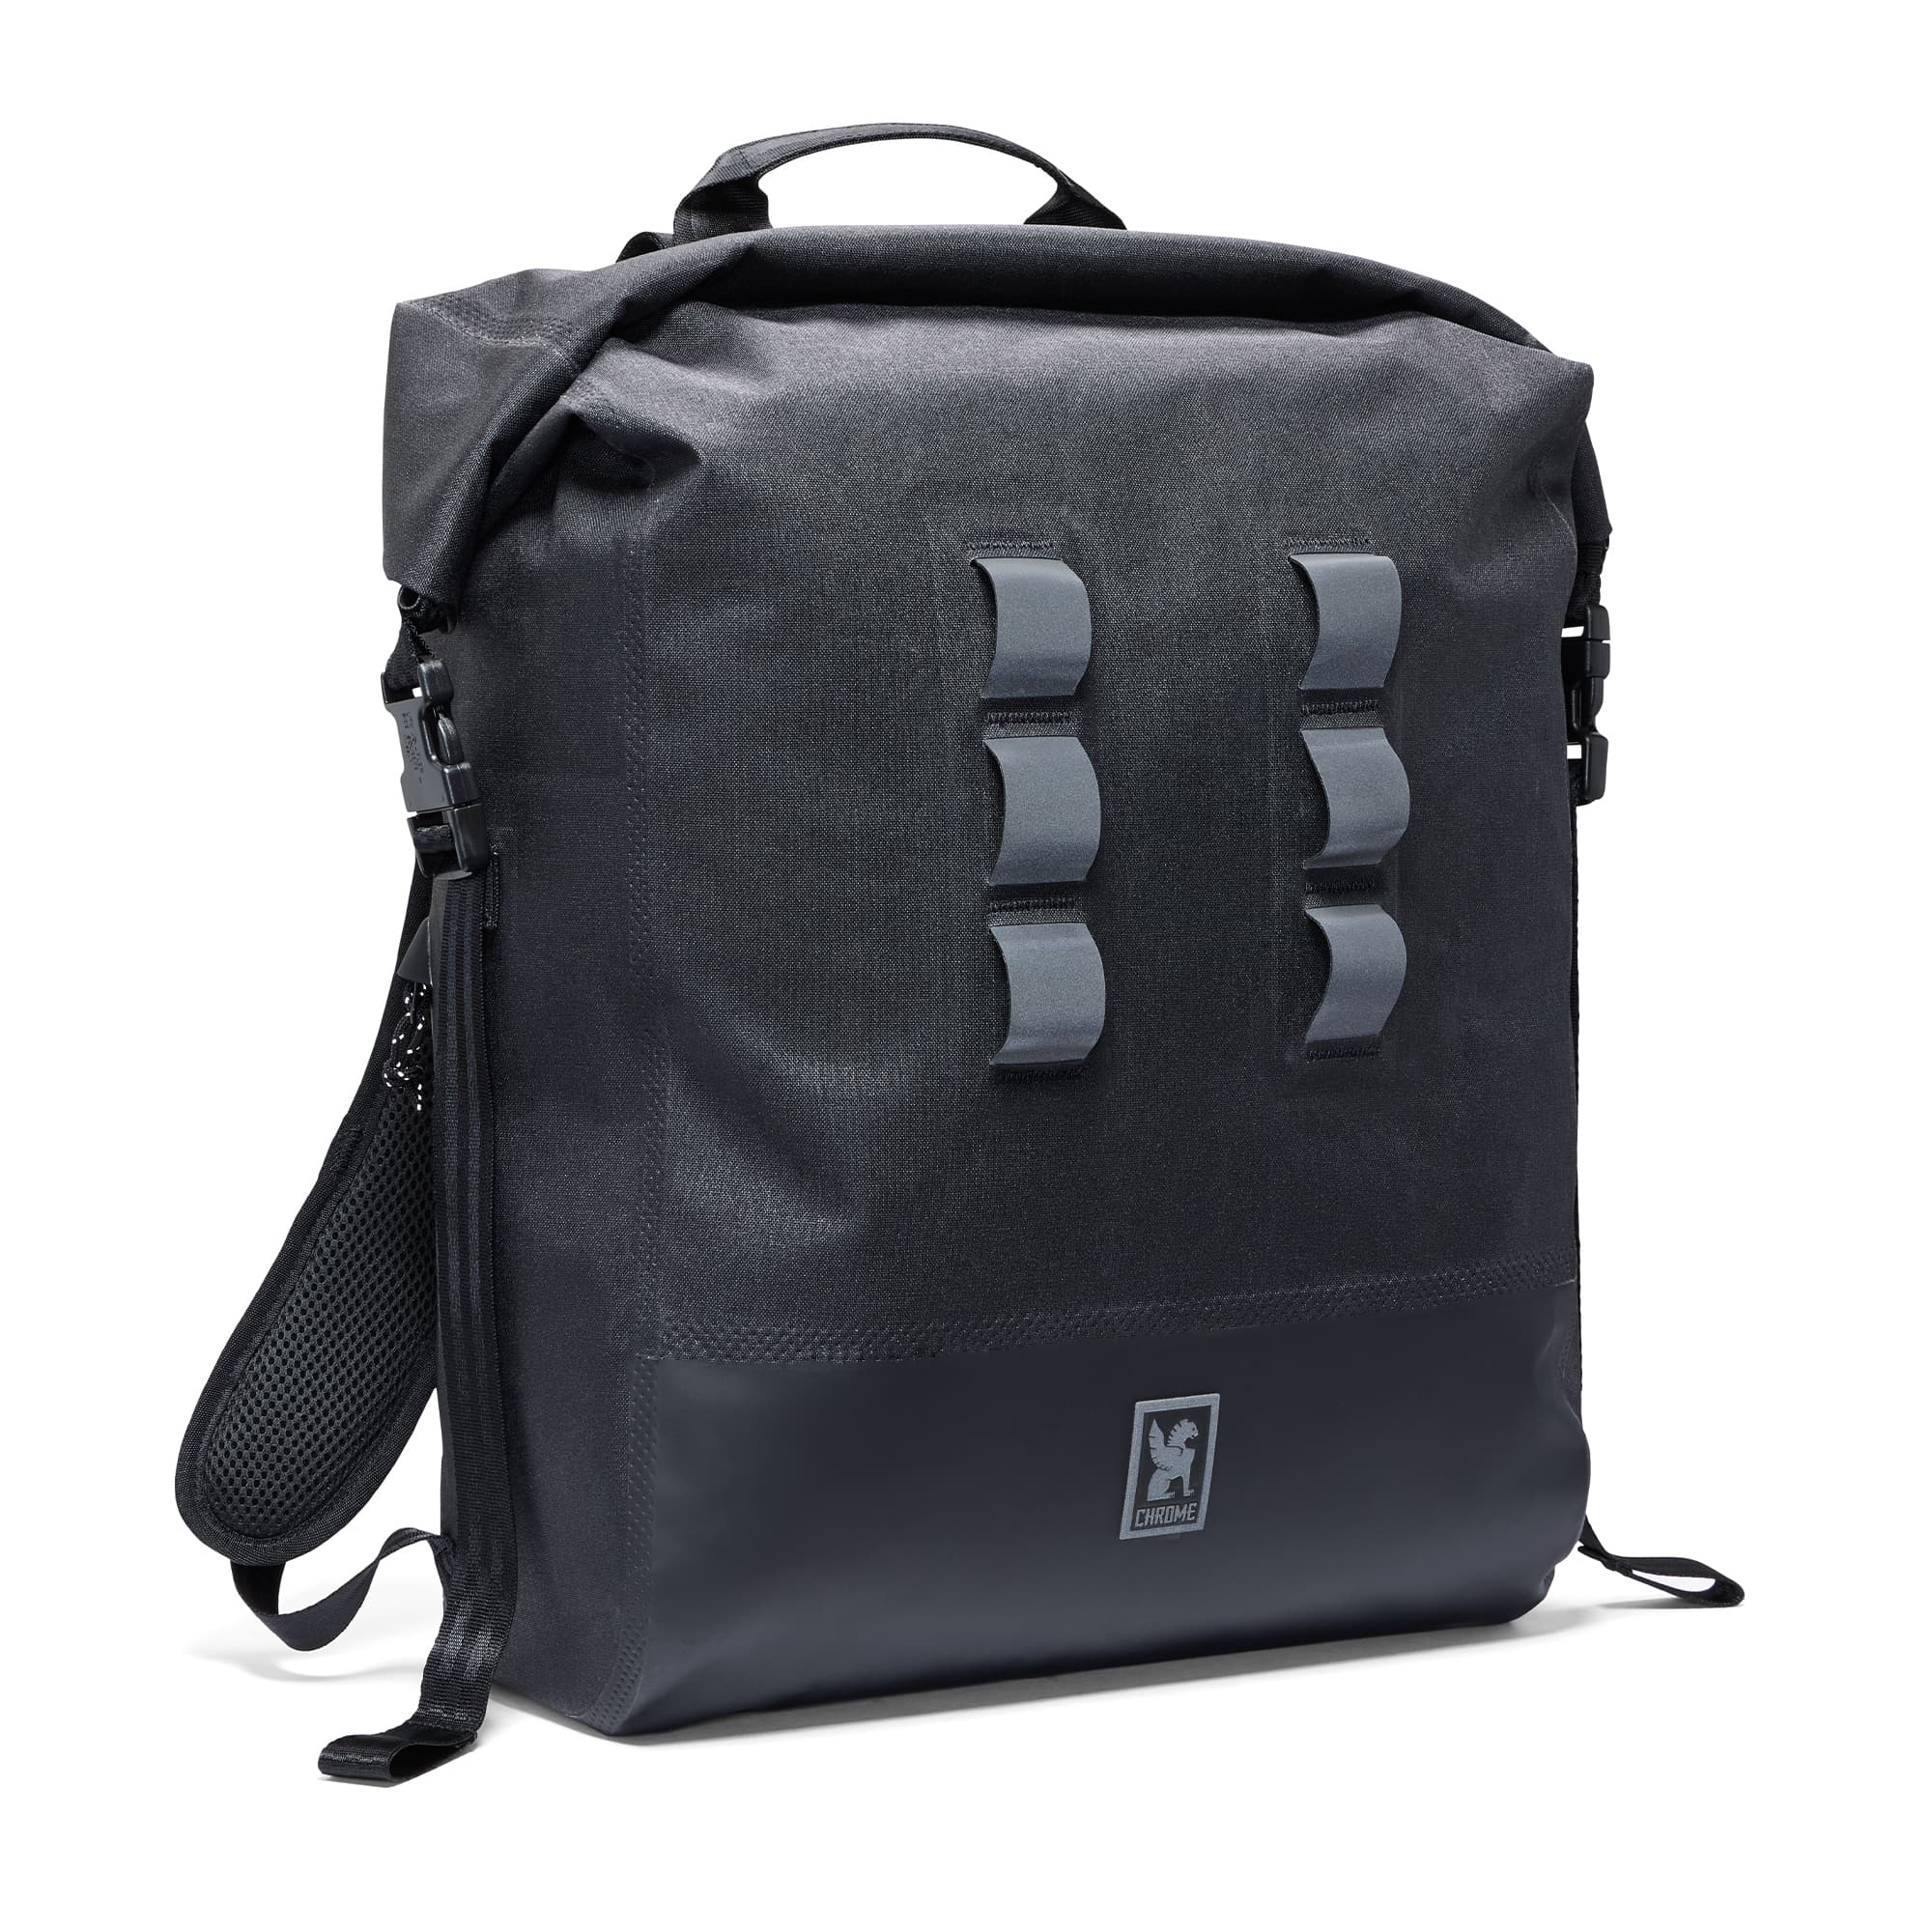 Backpacks: JUST BACKPACK VEGA BLACK (20L)